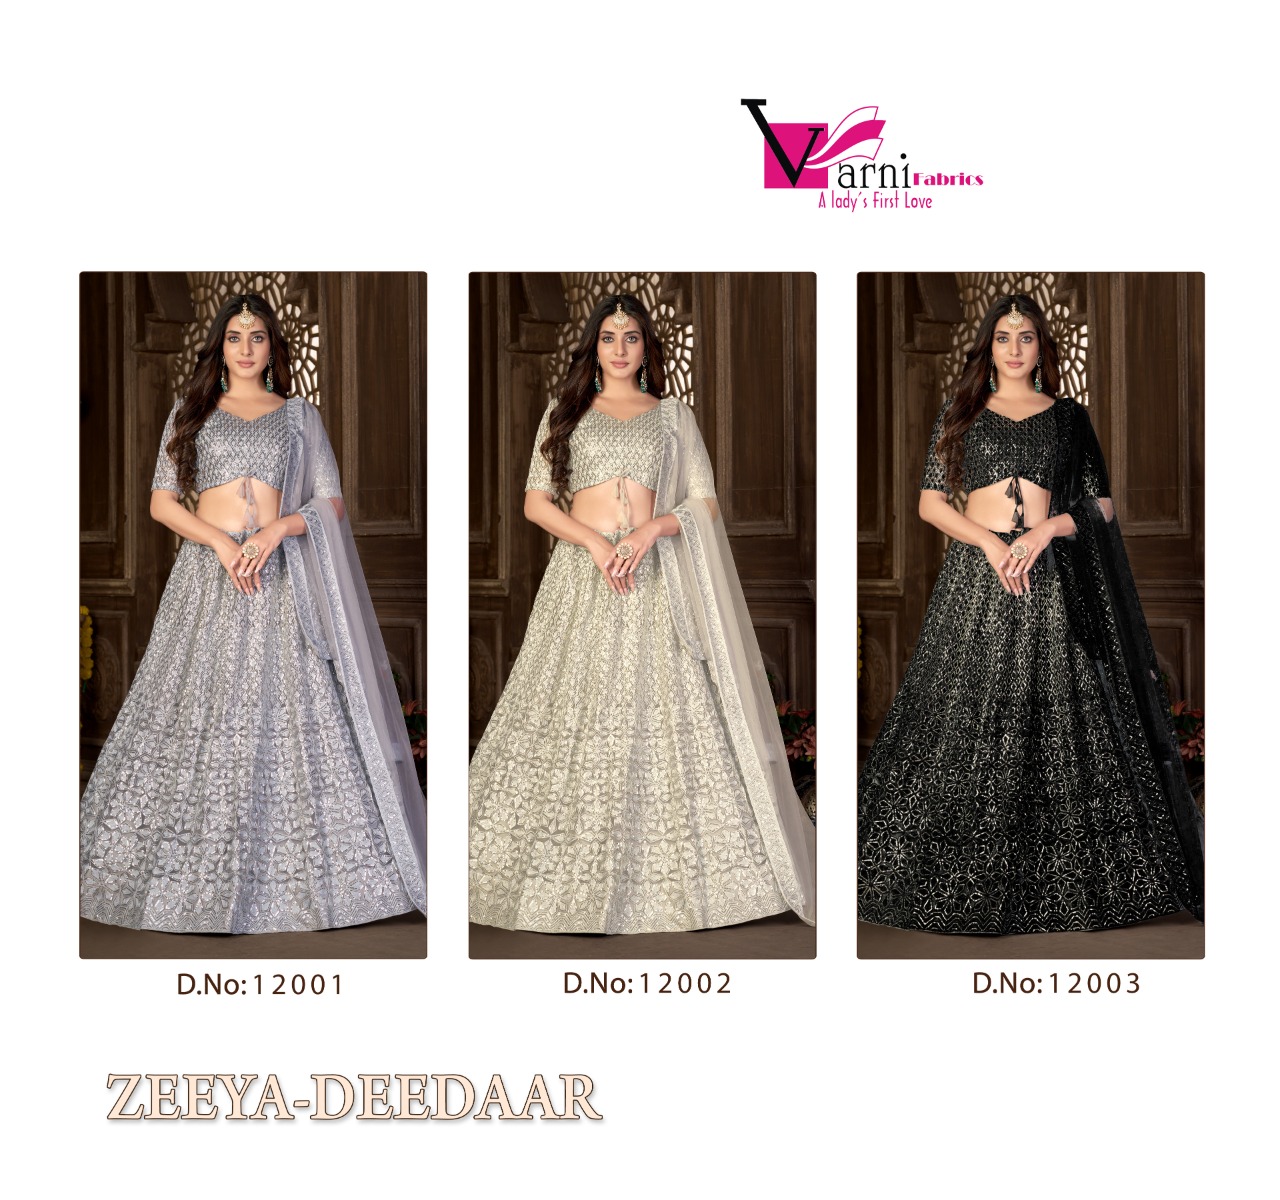 Varni Fabric Zeeya Deedaar 12001-12003